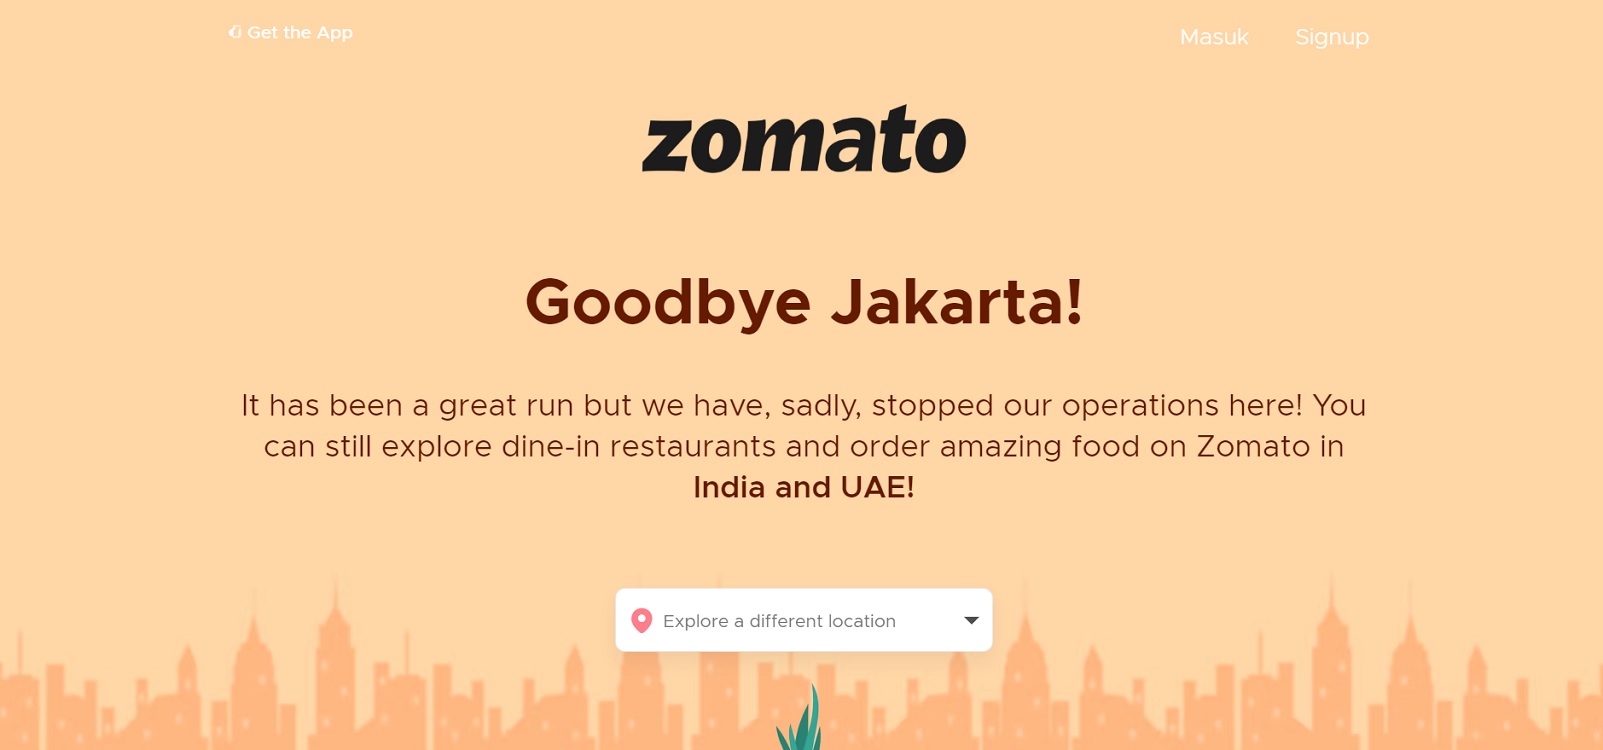 Zomato Indonesia Tutup Layanan: Goodbye Jakarta!